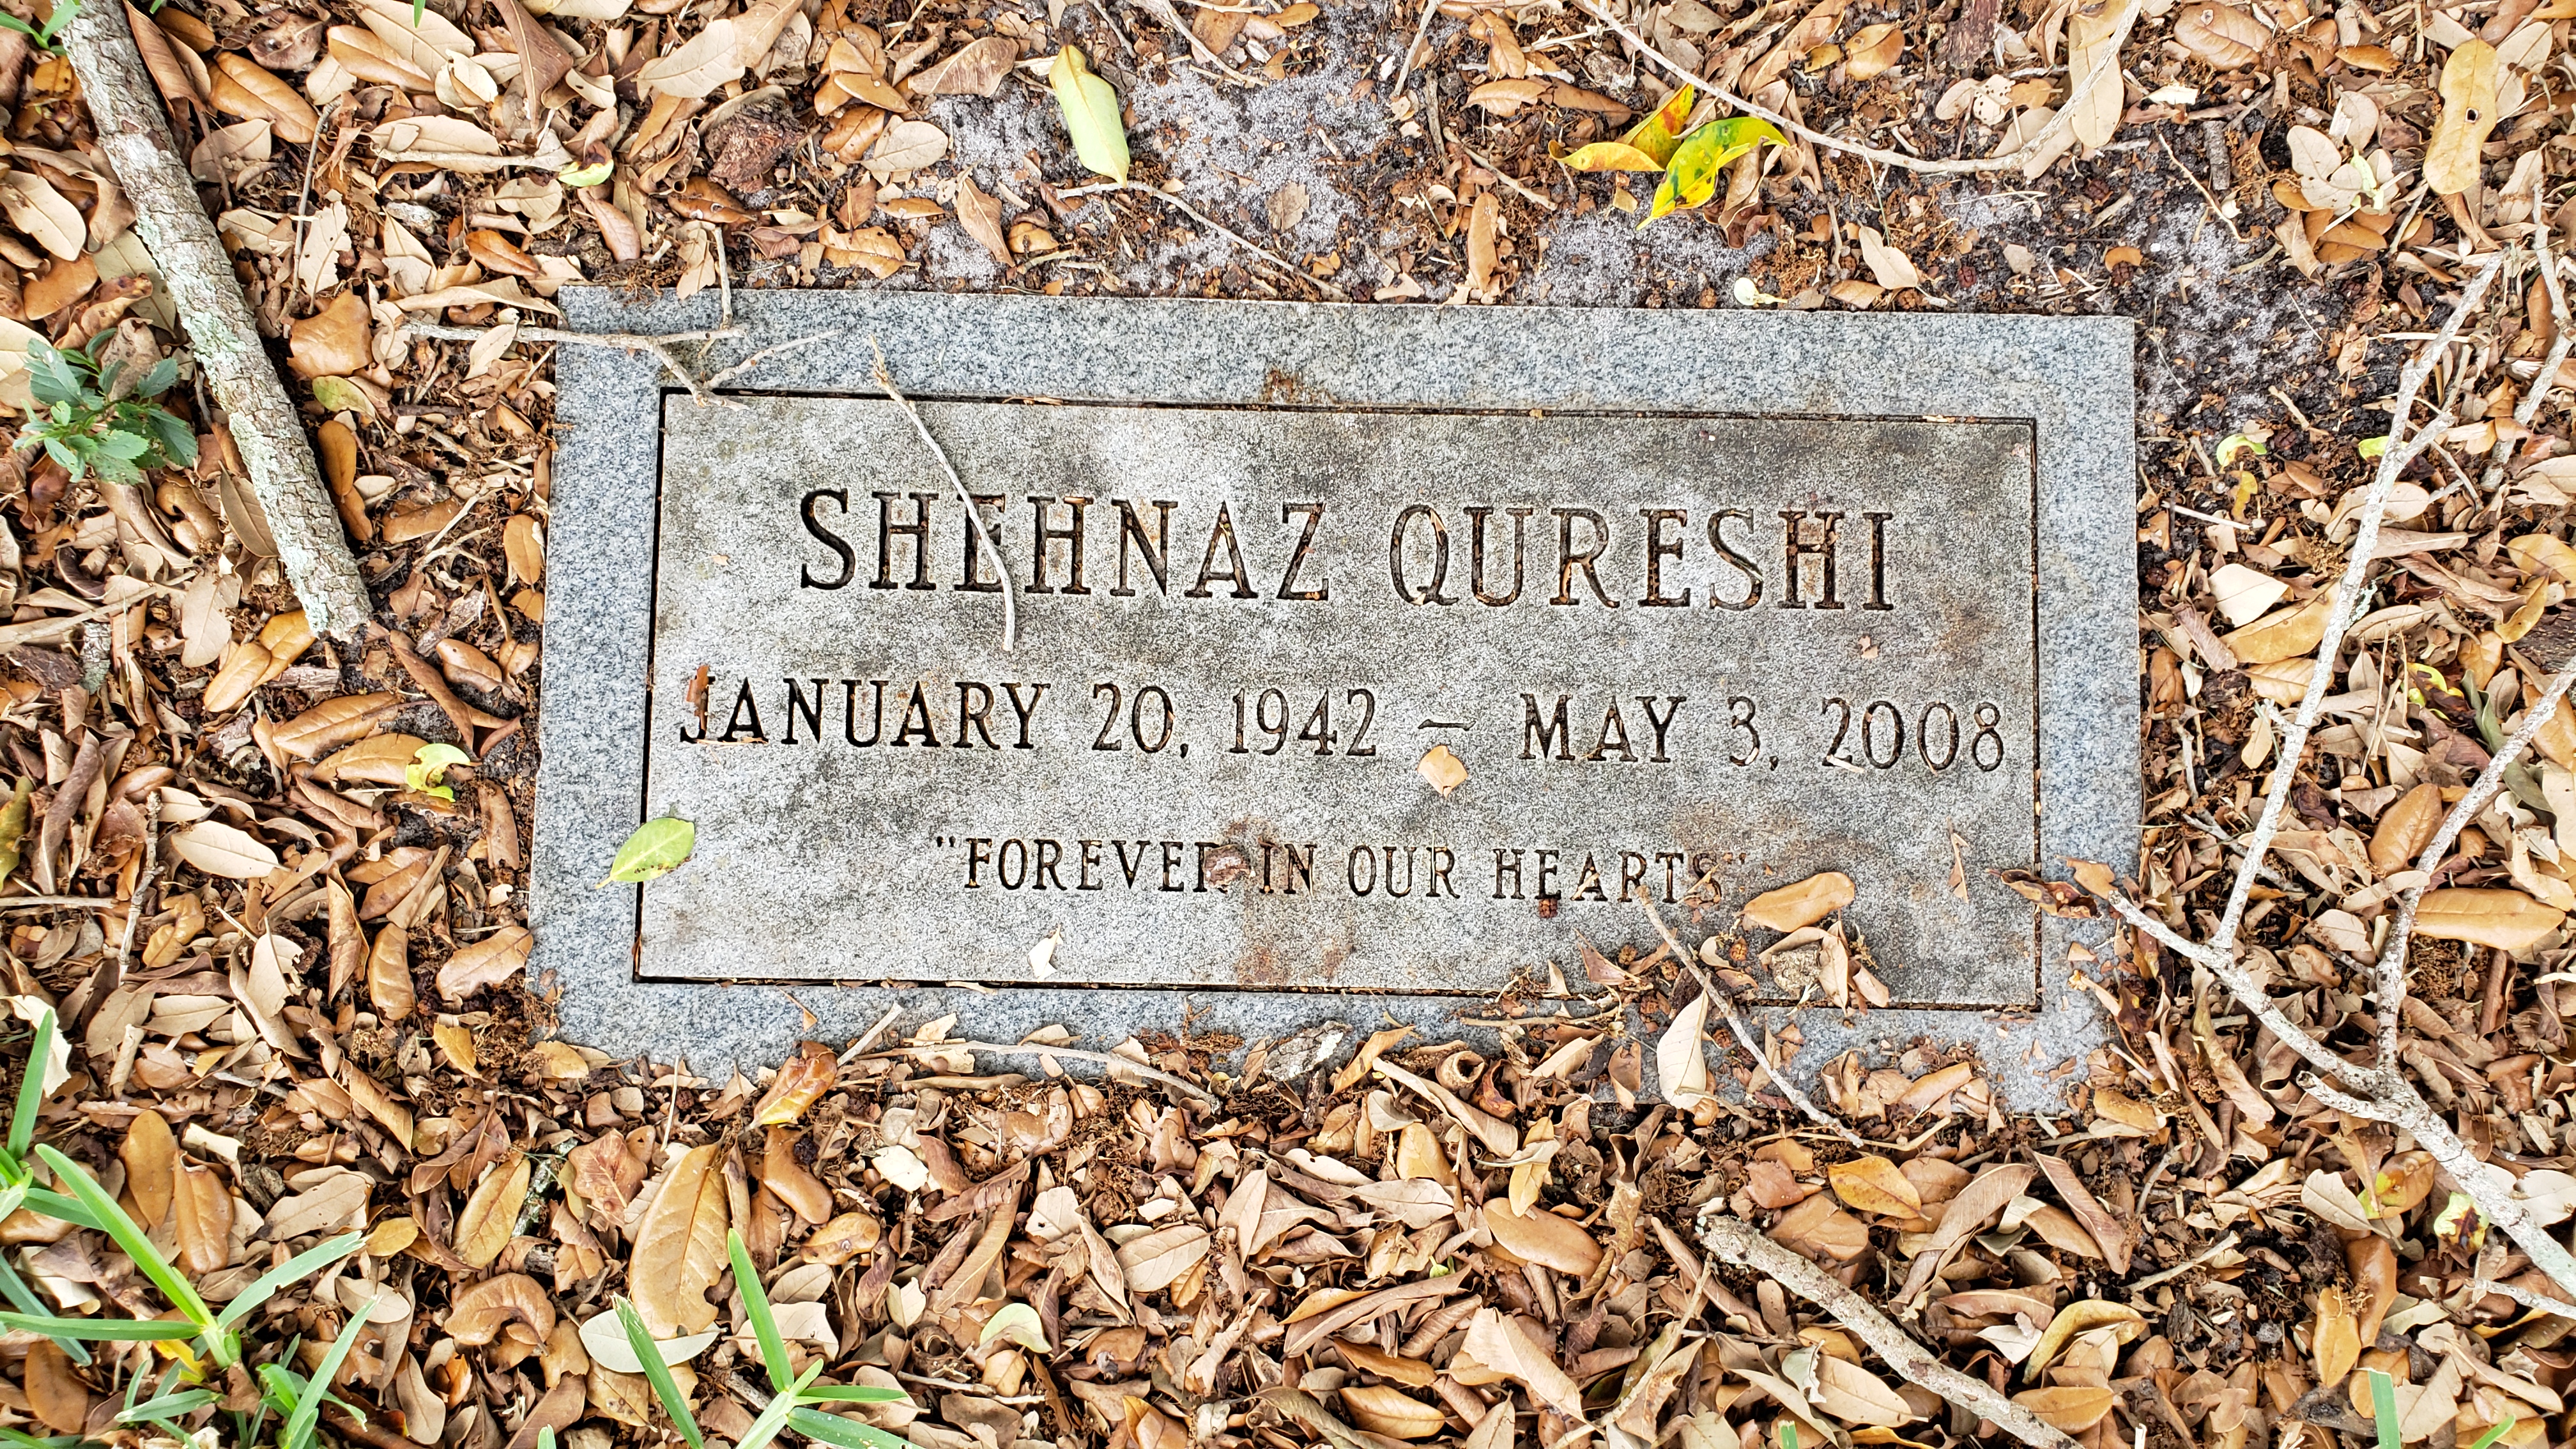 Shehnaz Qureshi